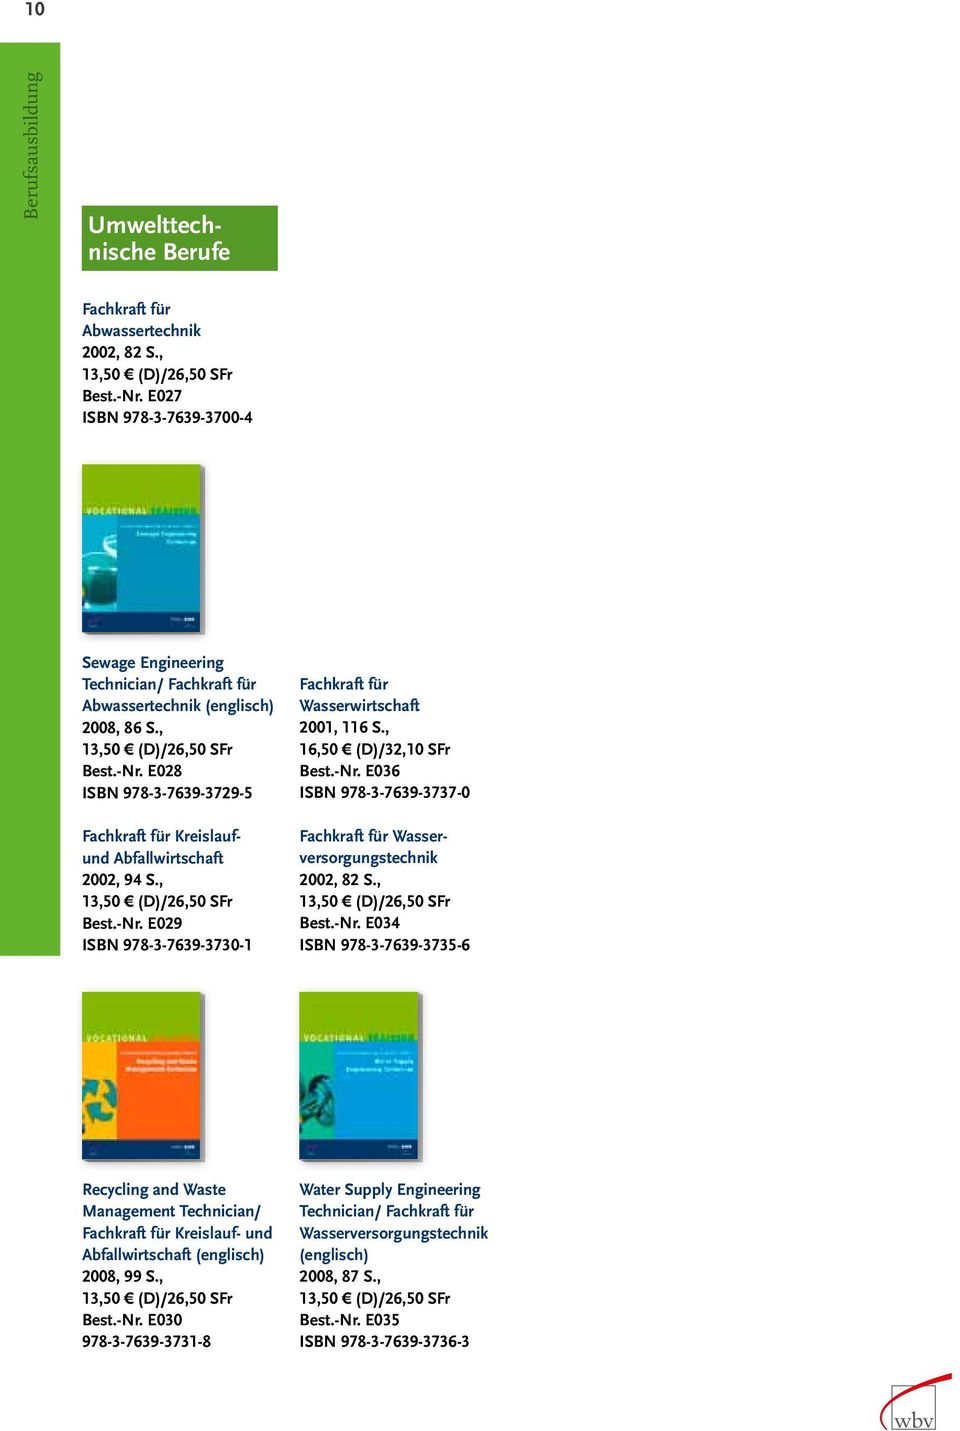 E028 ISBN 978-3-7639-3729-5 Fachkraft für Kreislaufund Abfallwirtschaft 2002, 94 S., Best.-Nr. E029 ISBN 978-3-7639-3730-1 Fachkraft für Wasserwirtschaft 2001, 116 S., Best.-Nr. E036 ISBN 978-3-7639-3737-0 Fachkraft für Wasserversorgungstechnik 2002, 82 S.